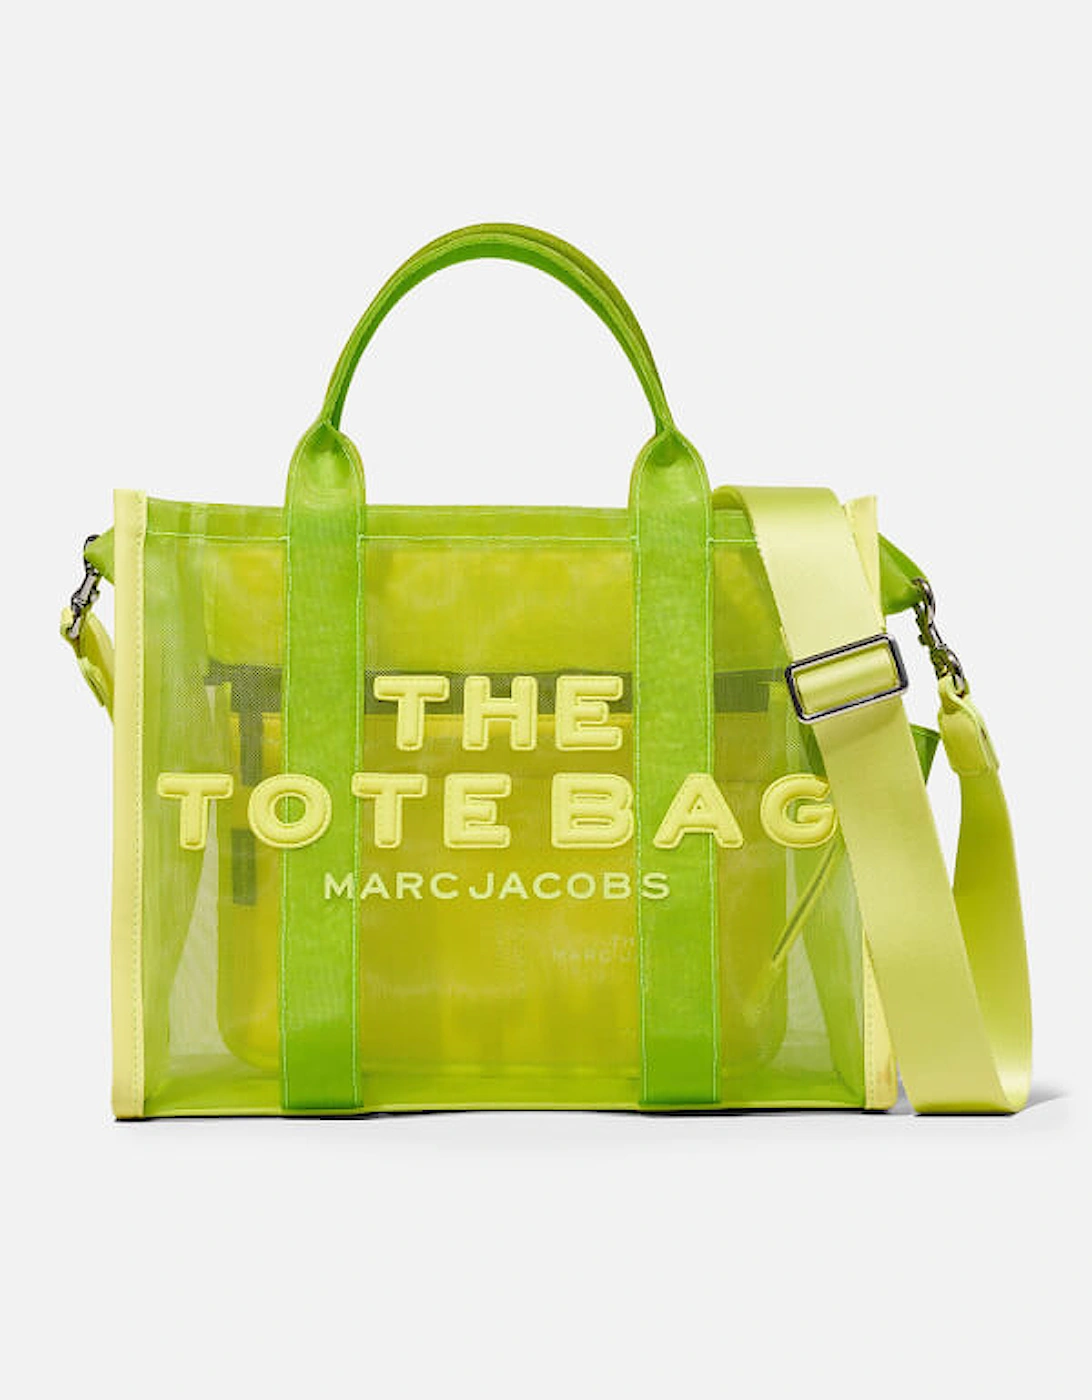 The Medium Mesh Tote Bag, 2 of 1